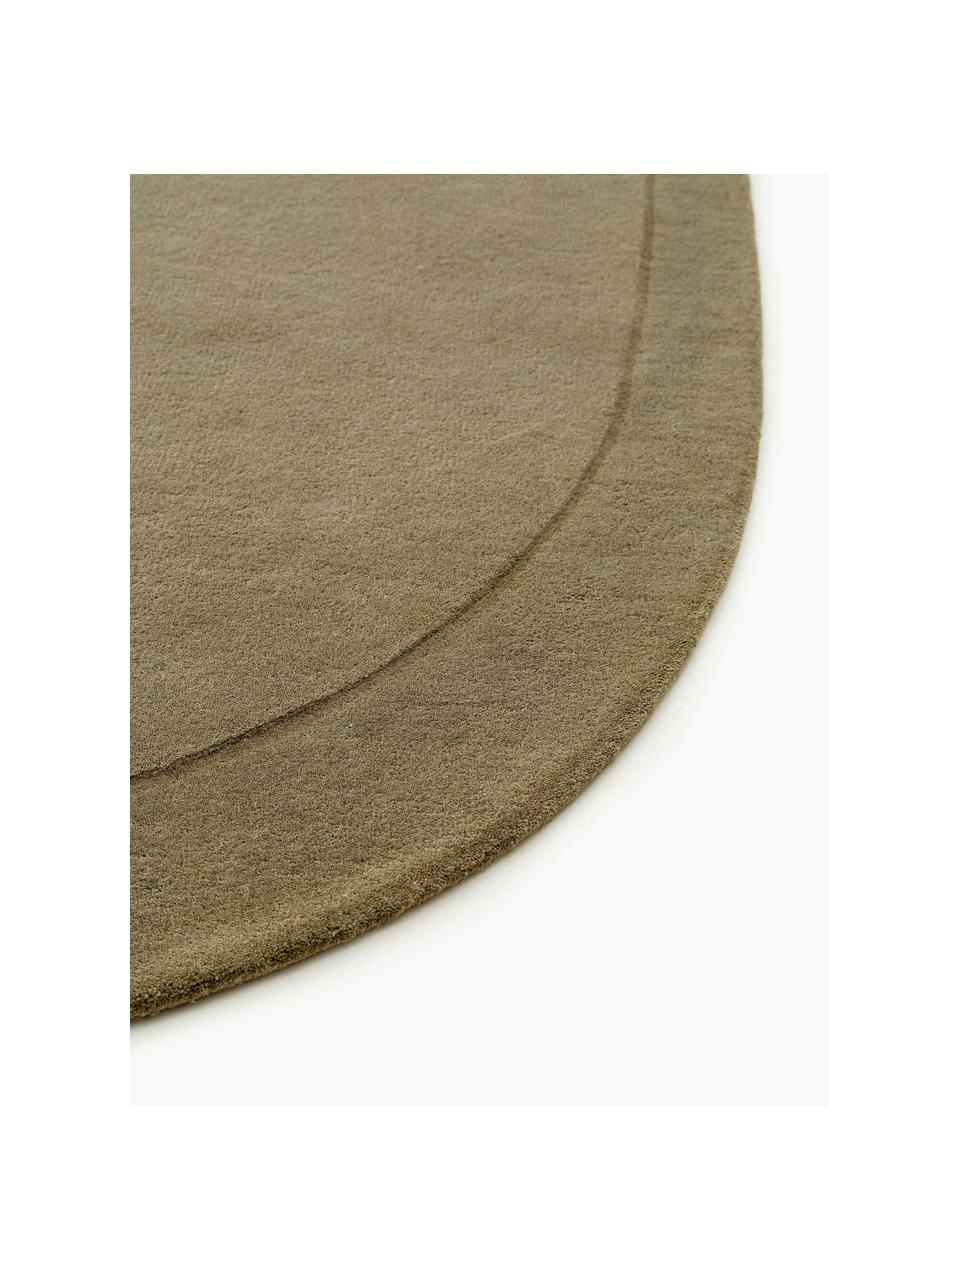 Tappeto in lana tessuto a mano dalla forma organica Shape, 100% lana

Nel caso dei tappeti di lana, le fibre possono staccarsi nelle prime settimane di utilizzo, questo e la formazione di lanugine si riducono con l'uso quotidiano, Verde oliva, Larg. 160 x Lung. 230 cm (taglia M)